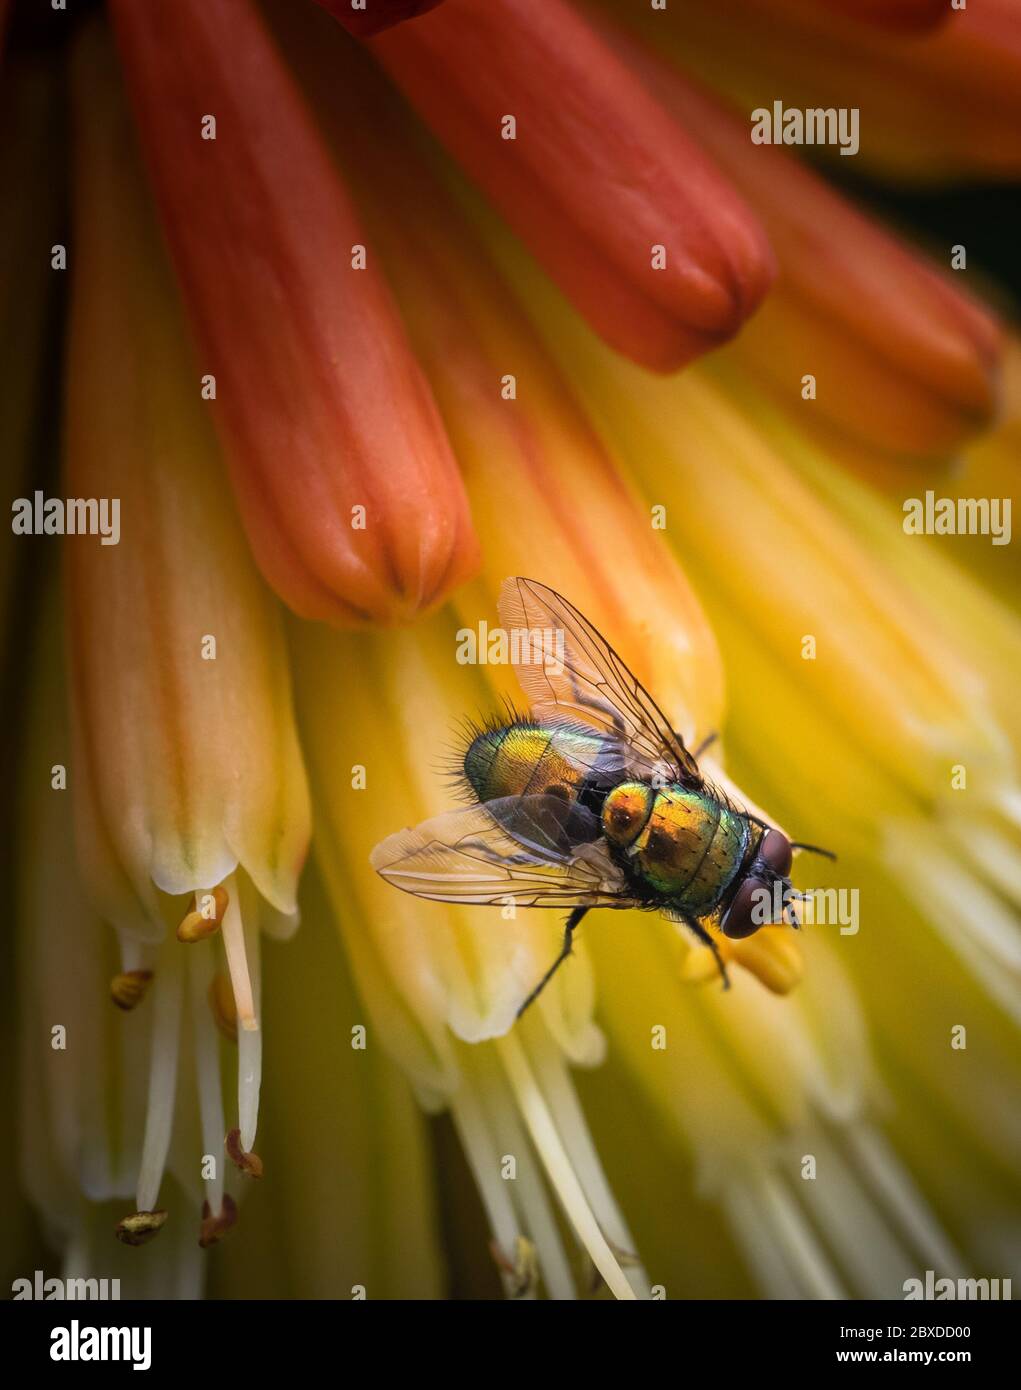 Iridescente volo contempla la sua prossima mossa mentre si riposa su una pianta colorata Foto Stock